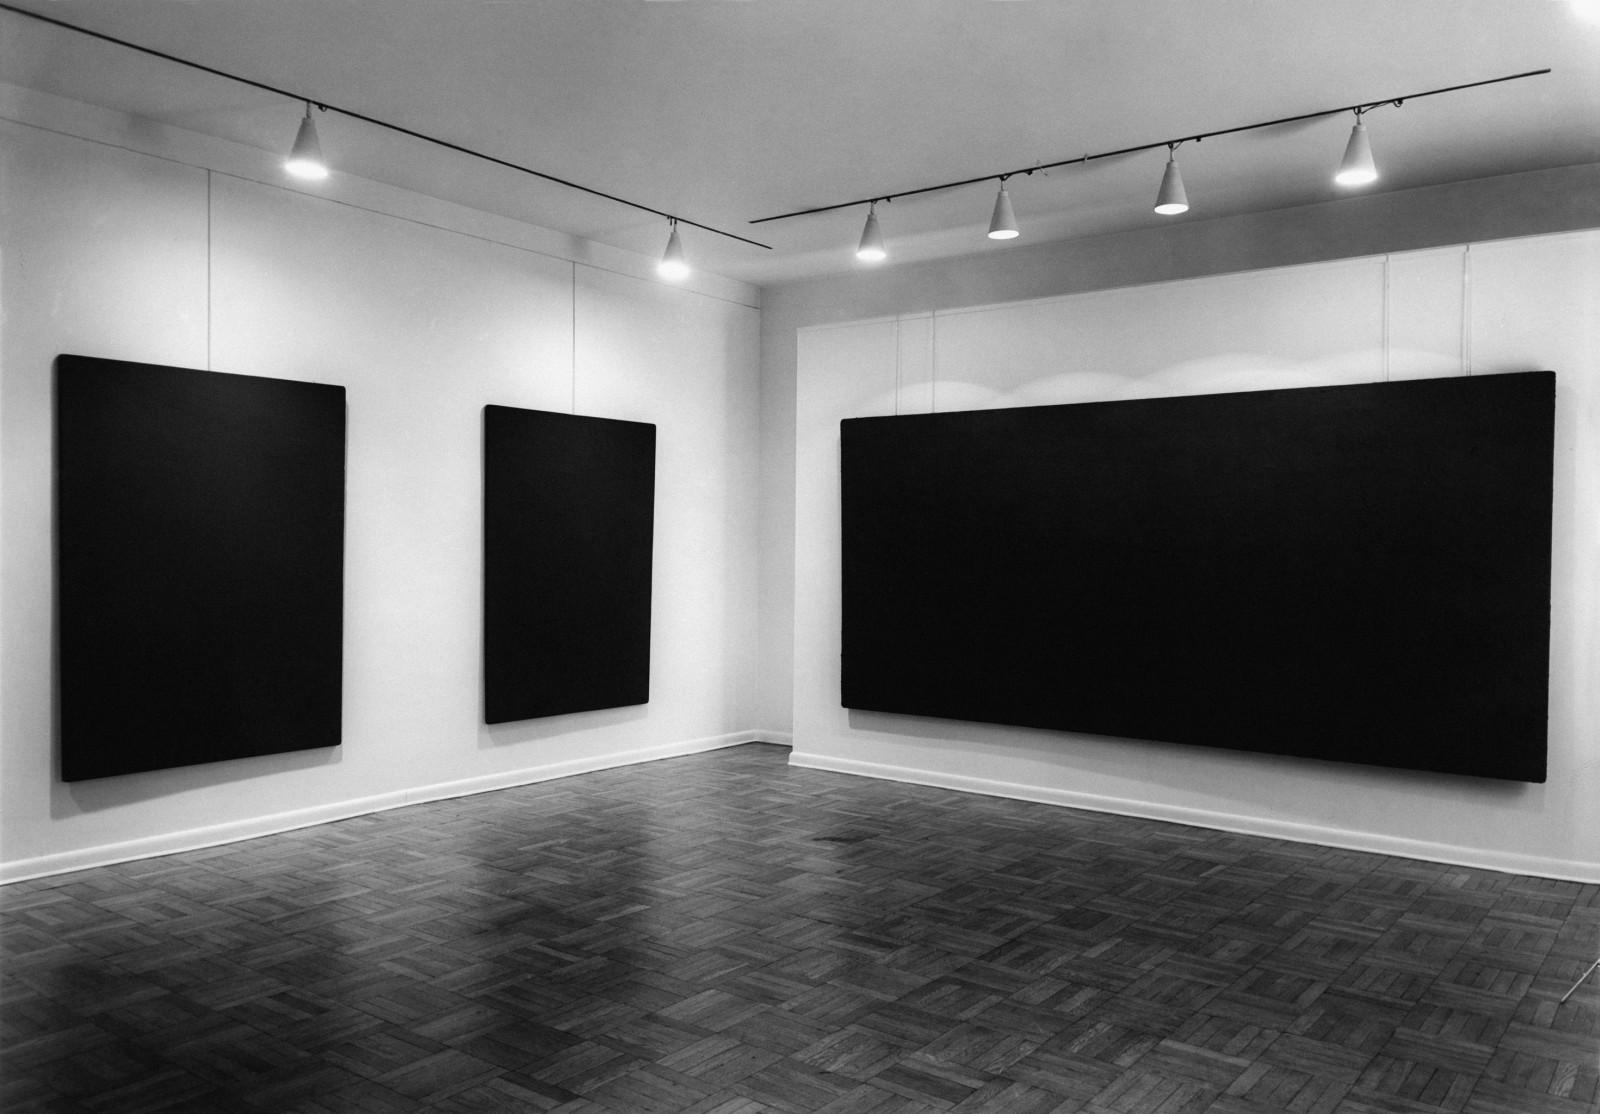 Yves Klein le monochrome